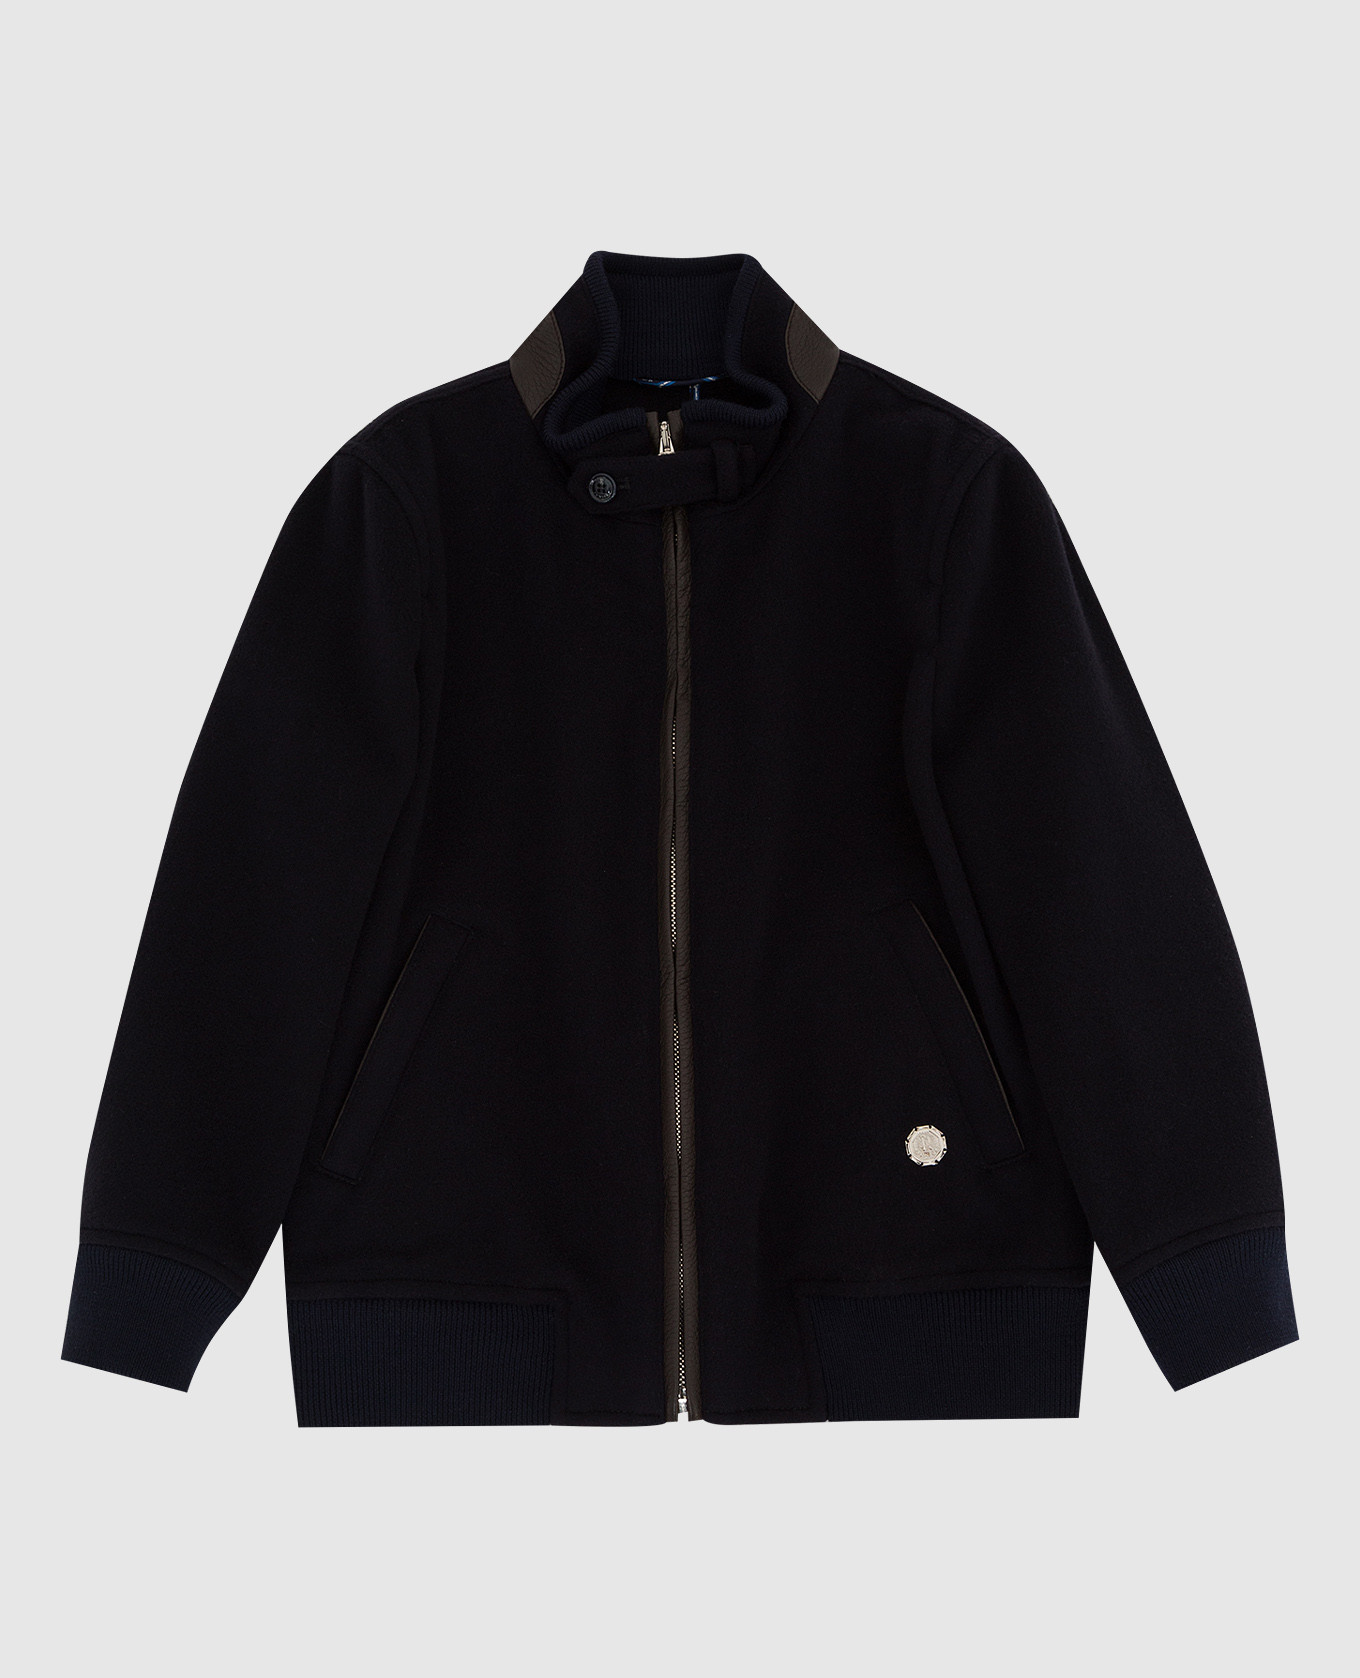 Children's dark blue cashmere jacket with leather inserts